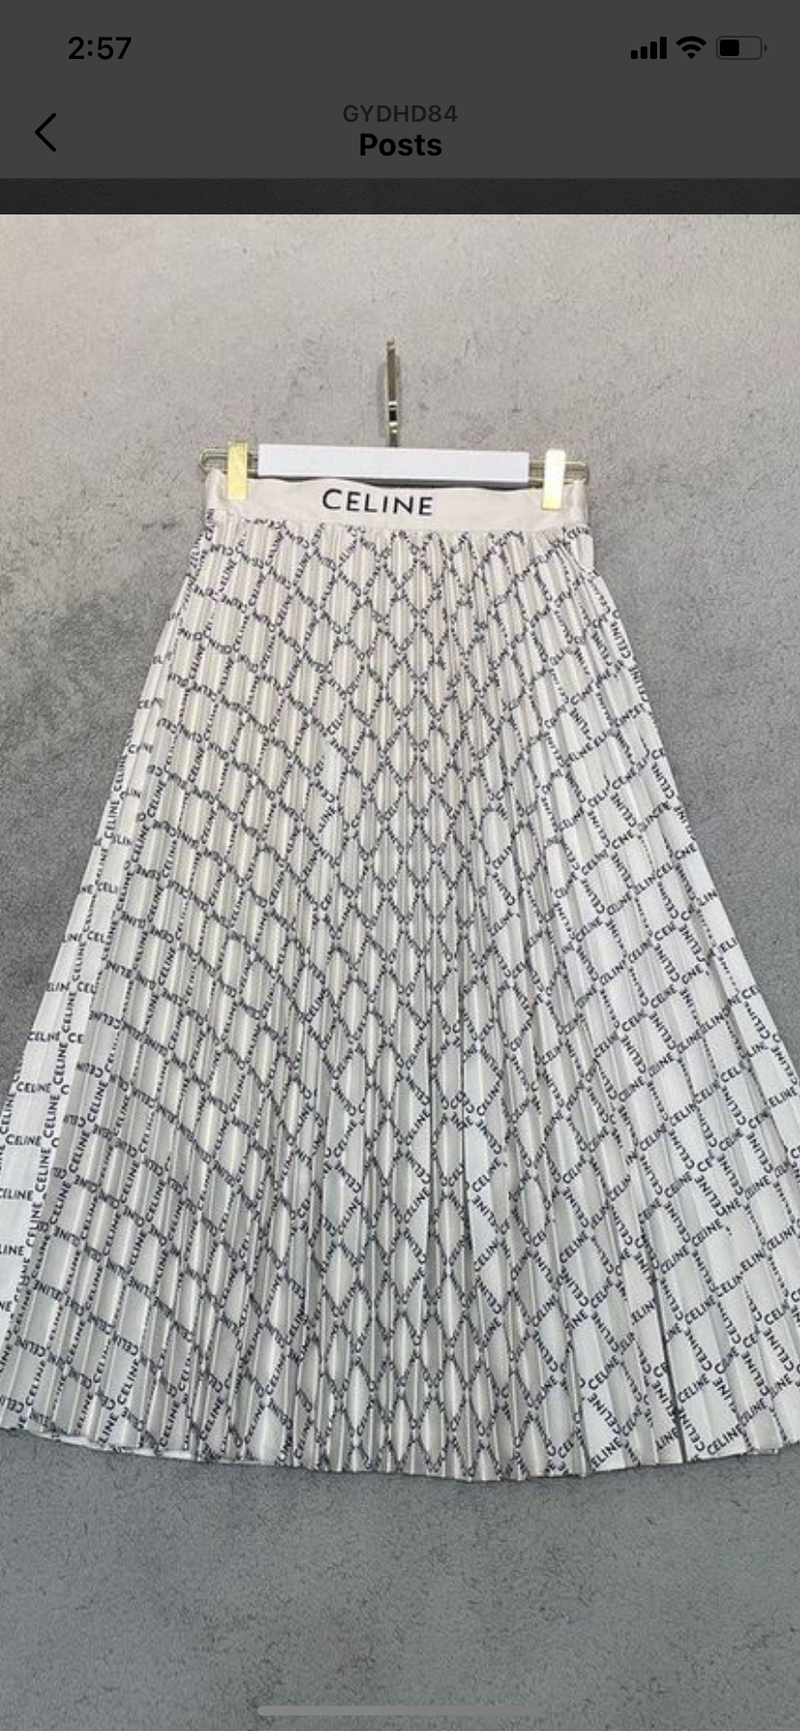 FHTH Celine Pleated Skirt